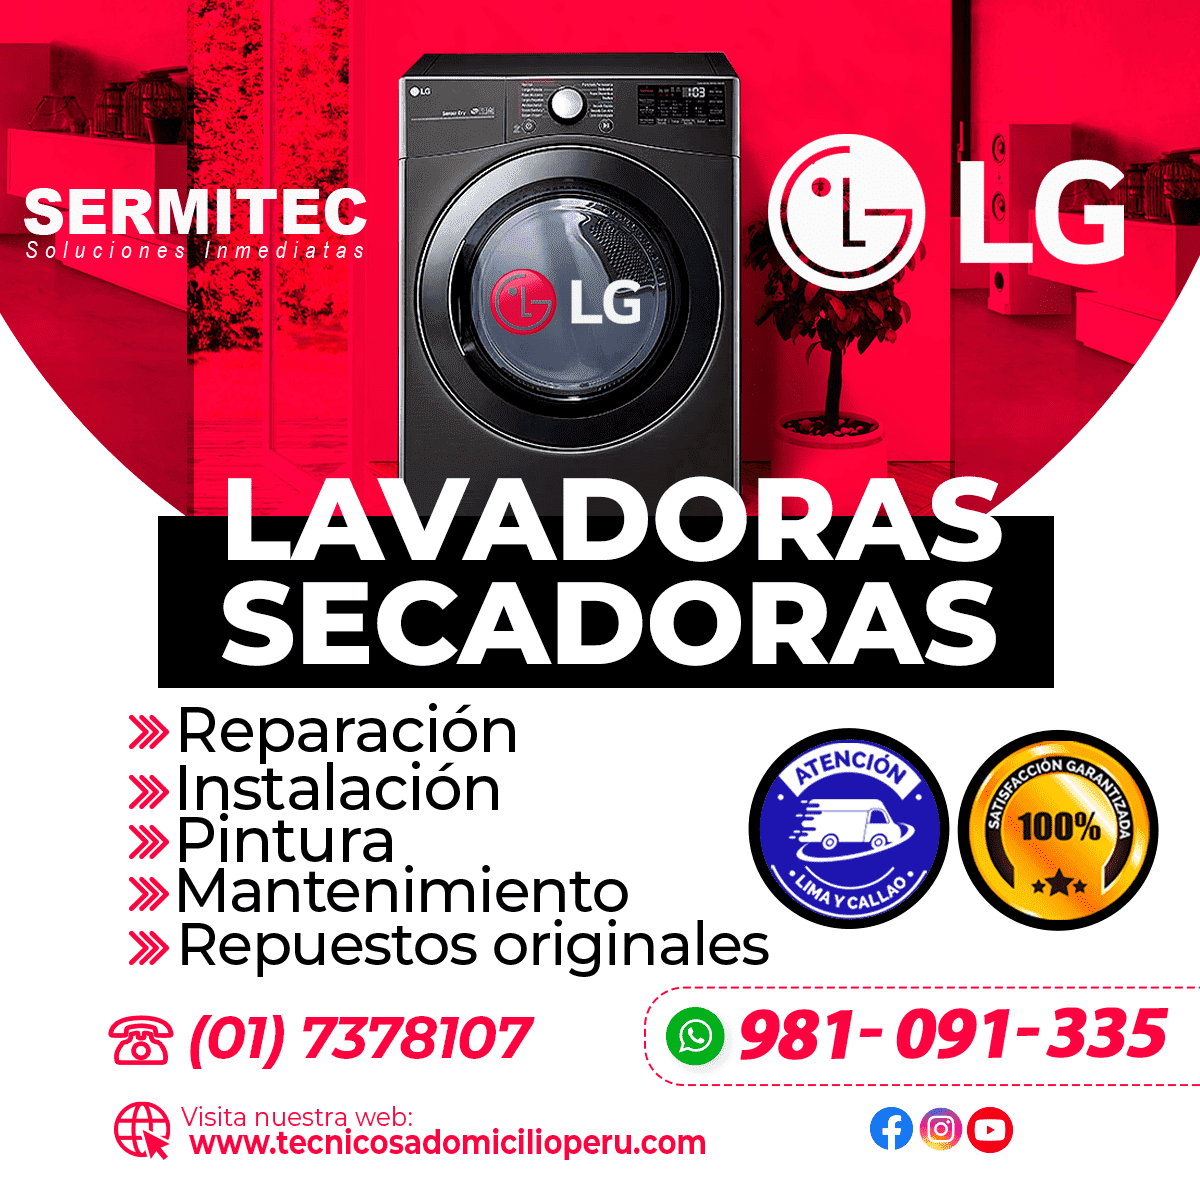 LG Reparación de LAVADORAS en SURCO 981091335